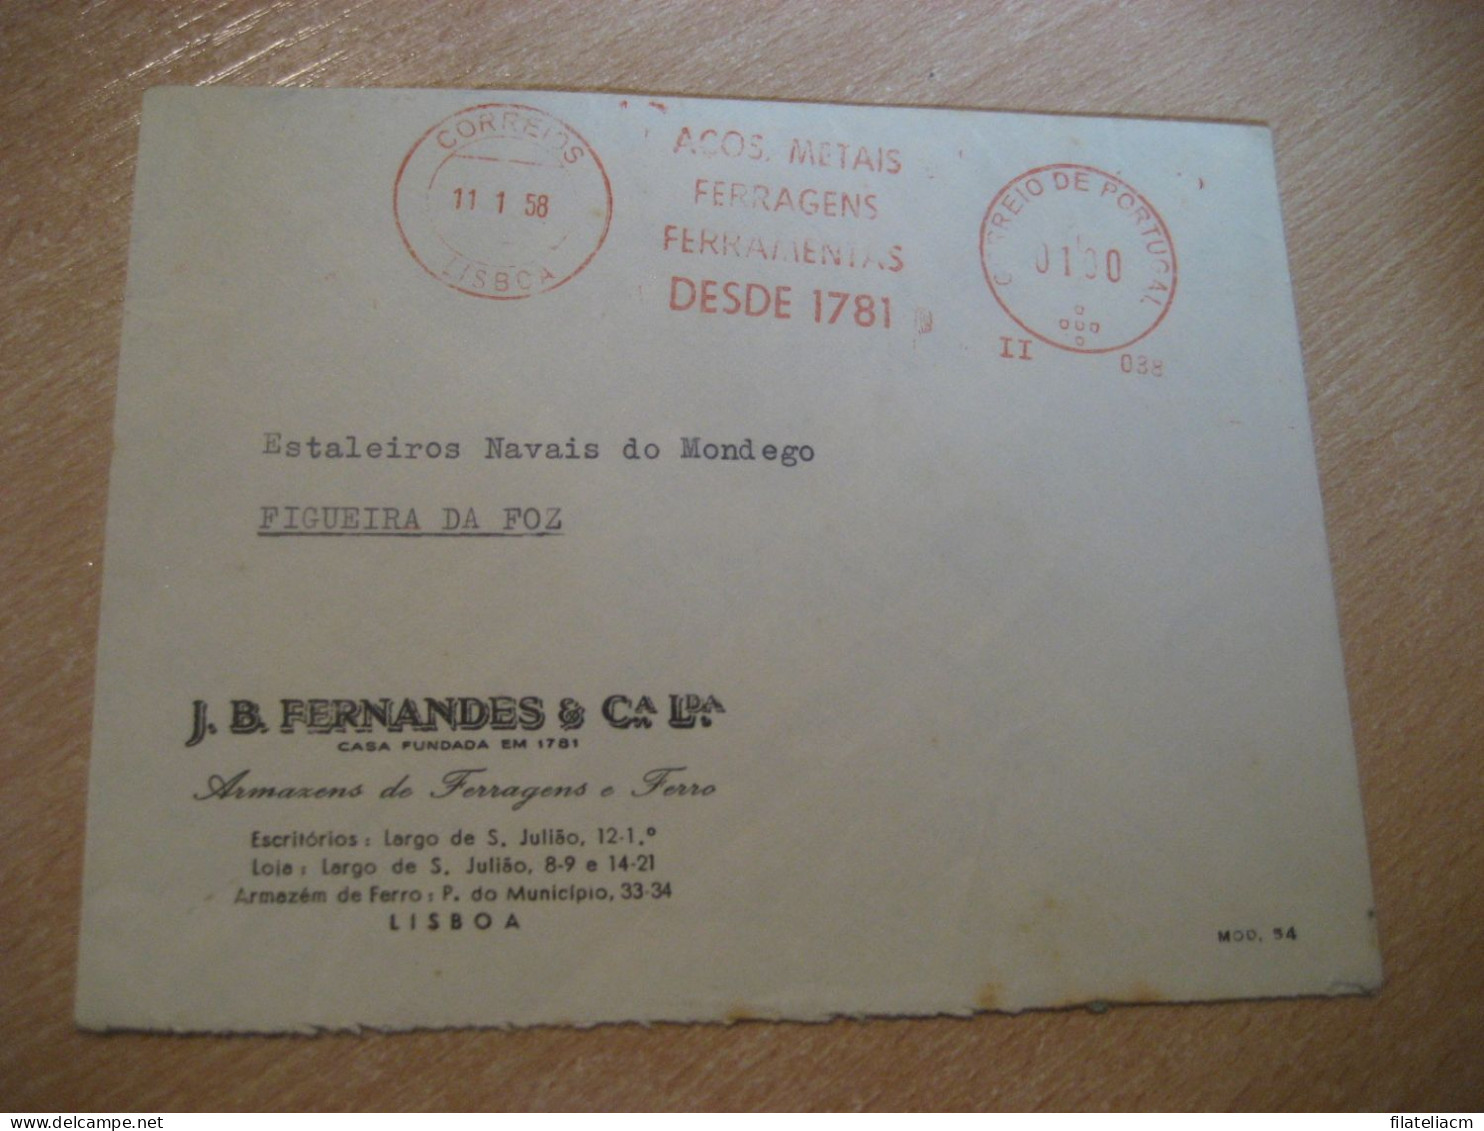 LISBOA 1958 To Figueira Da Foz Acos Metais Ferragens Ferramentas Meter Mail Cancel Cover PORTUGAL - Storia Postale